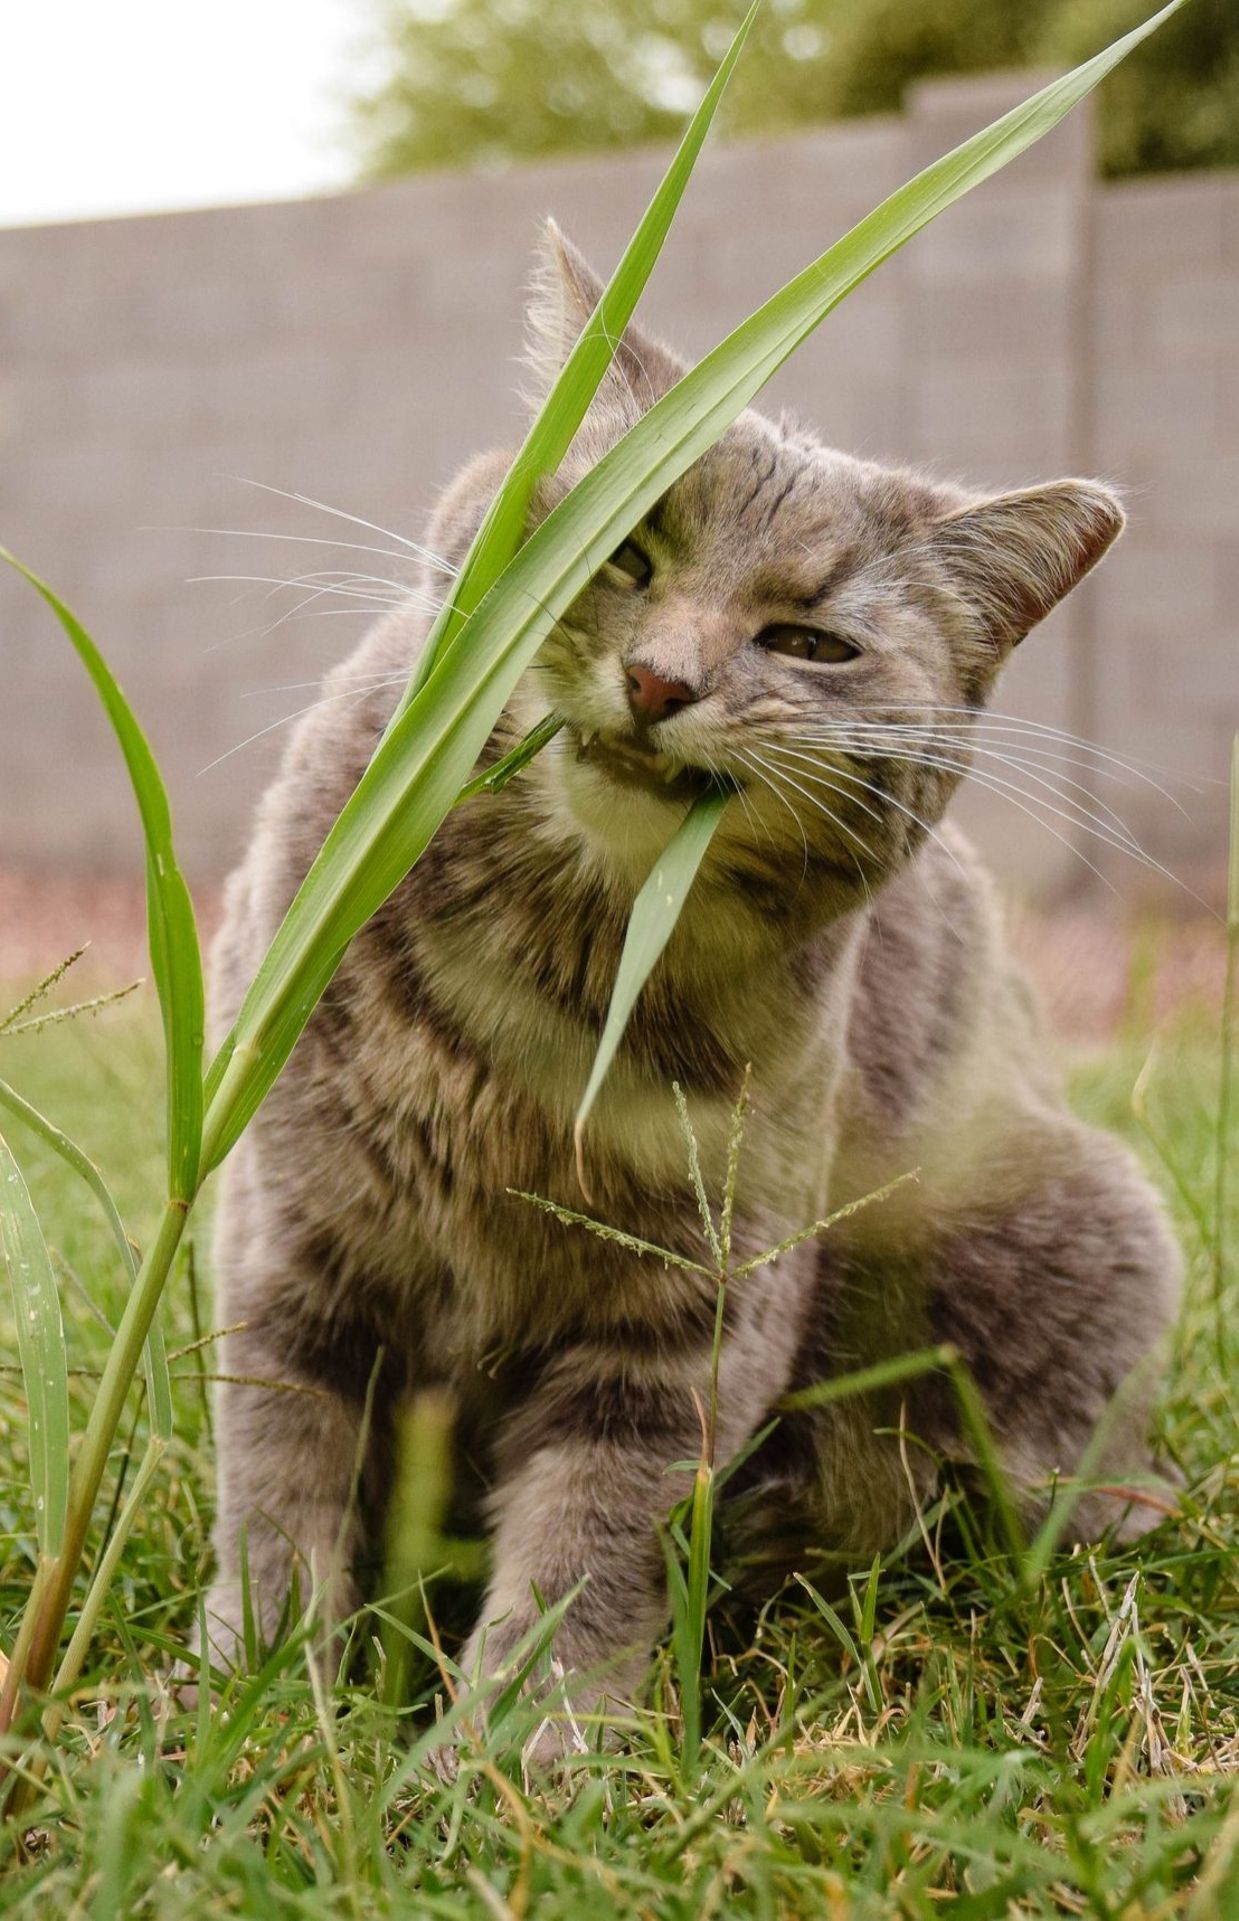 Les chats ont besoin de nutriments, notamment les fibres que l'on retrouve dans l'herbe.